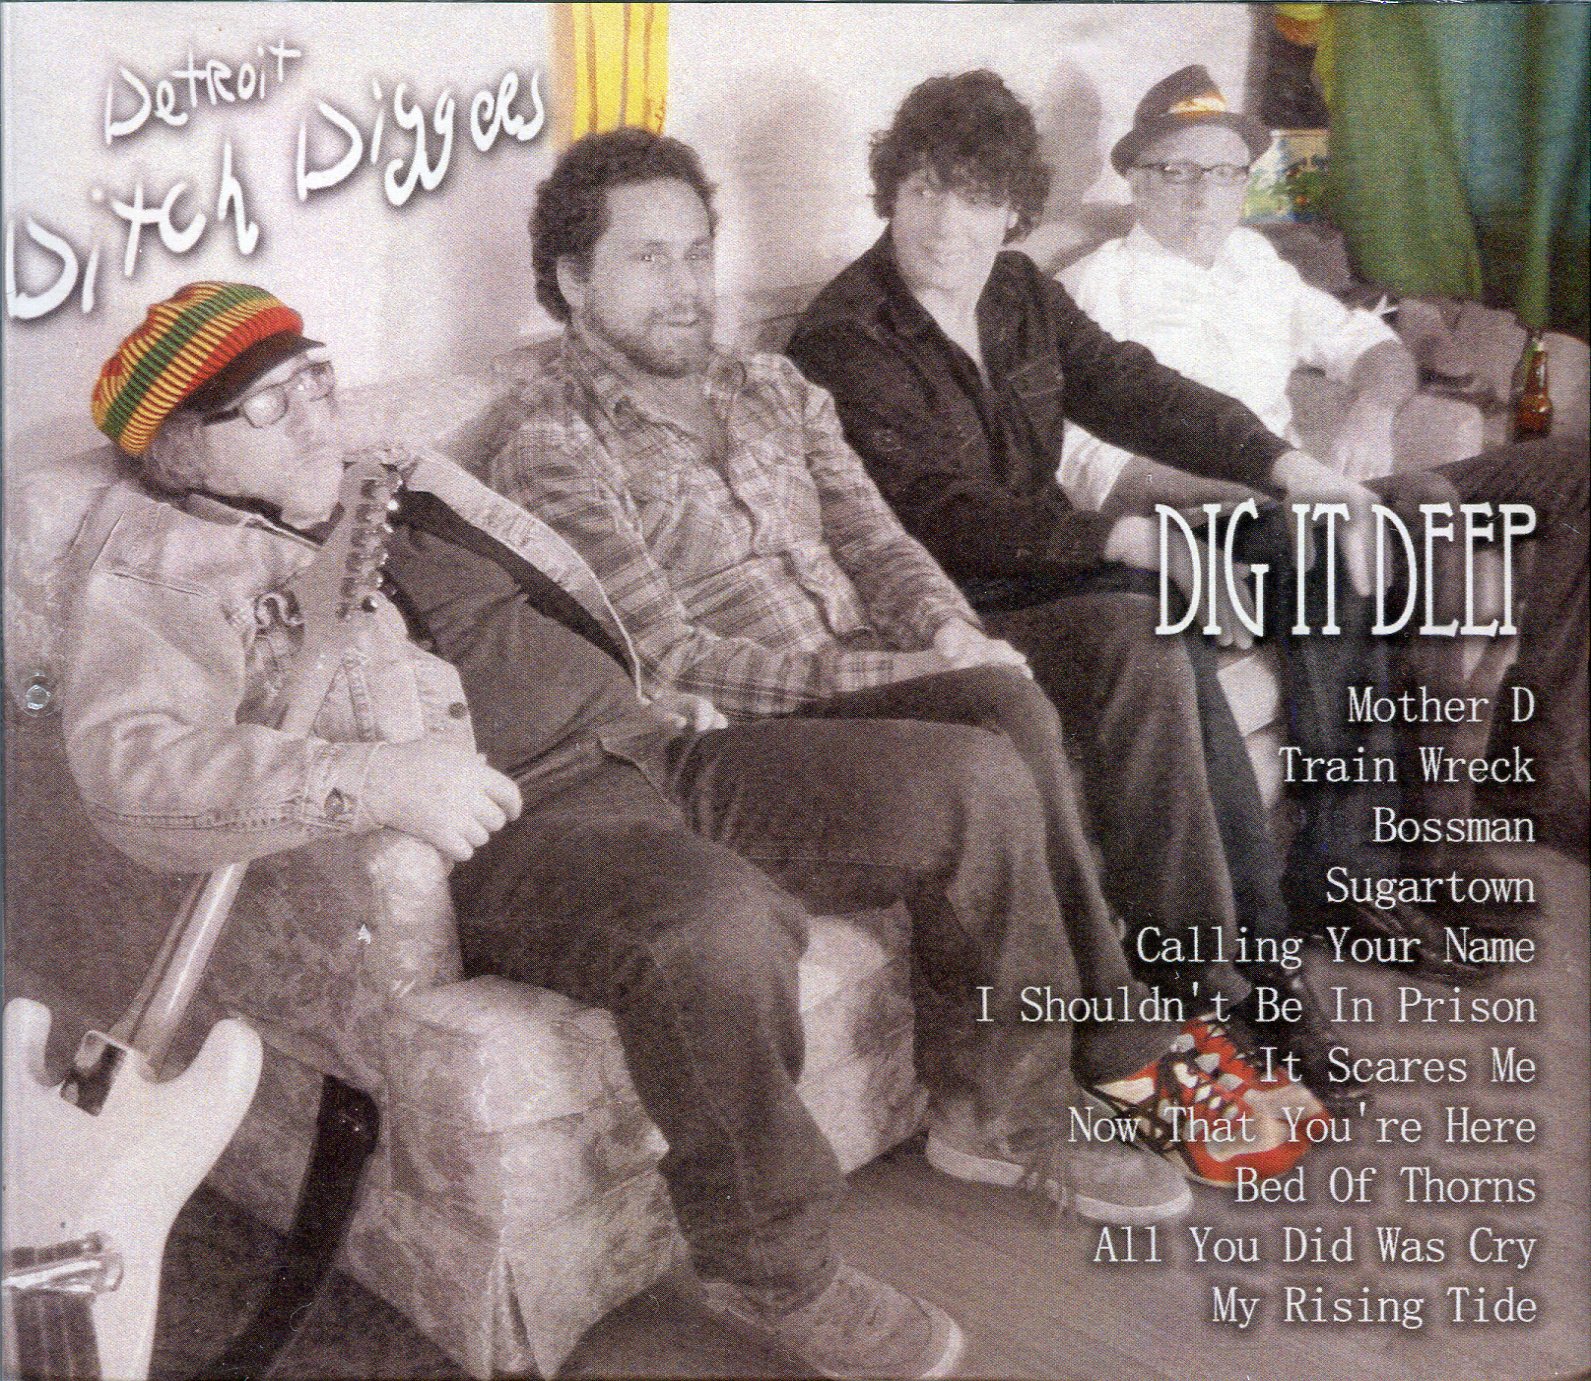 Detroit Ditch Diggers - Dig It Deep (album)